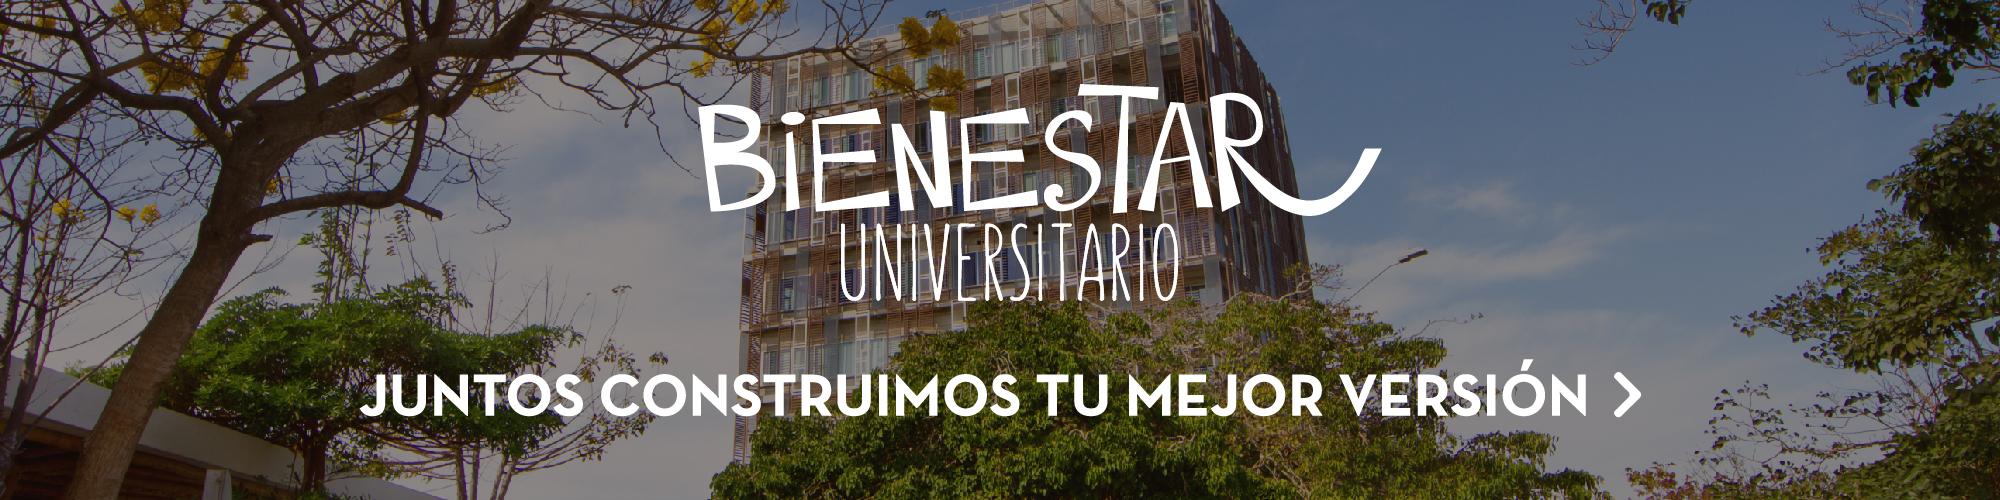 Banner Bienestar Universitario